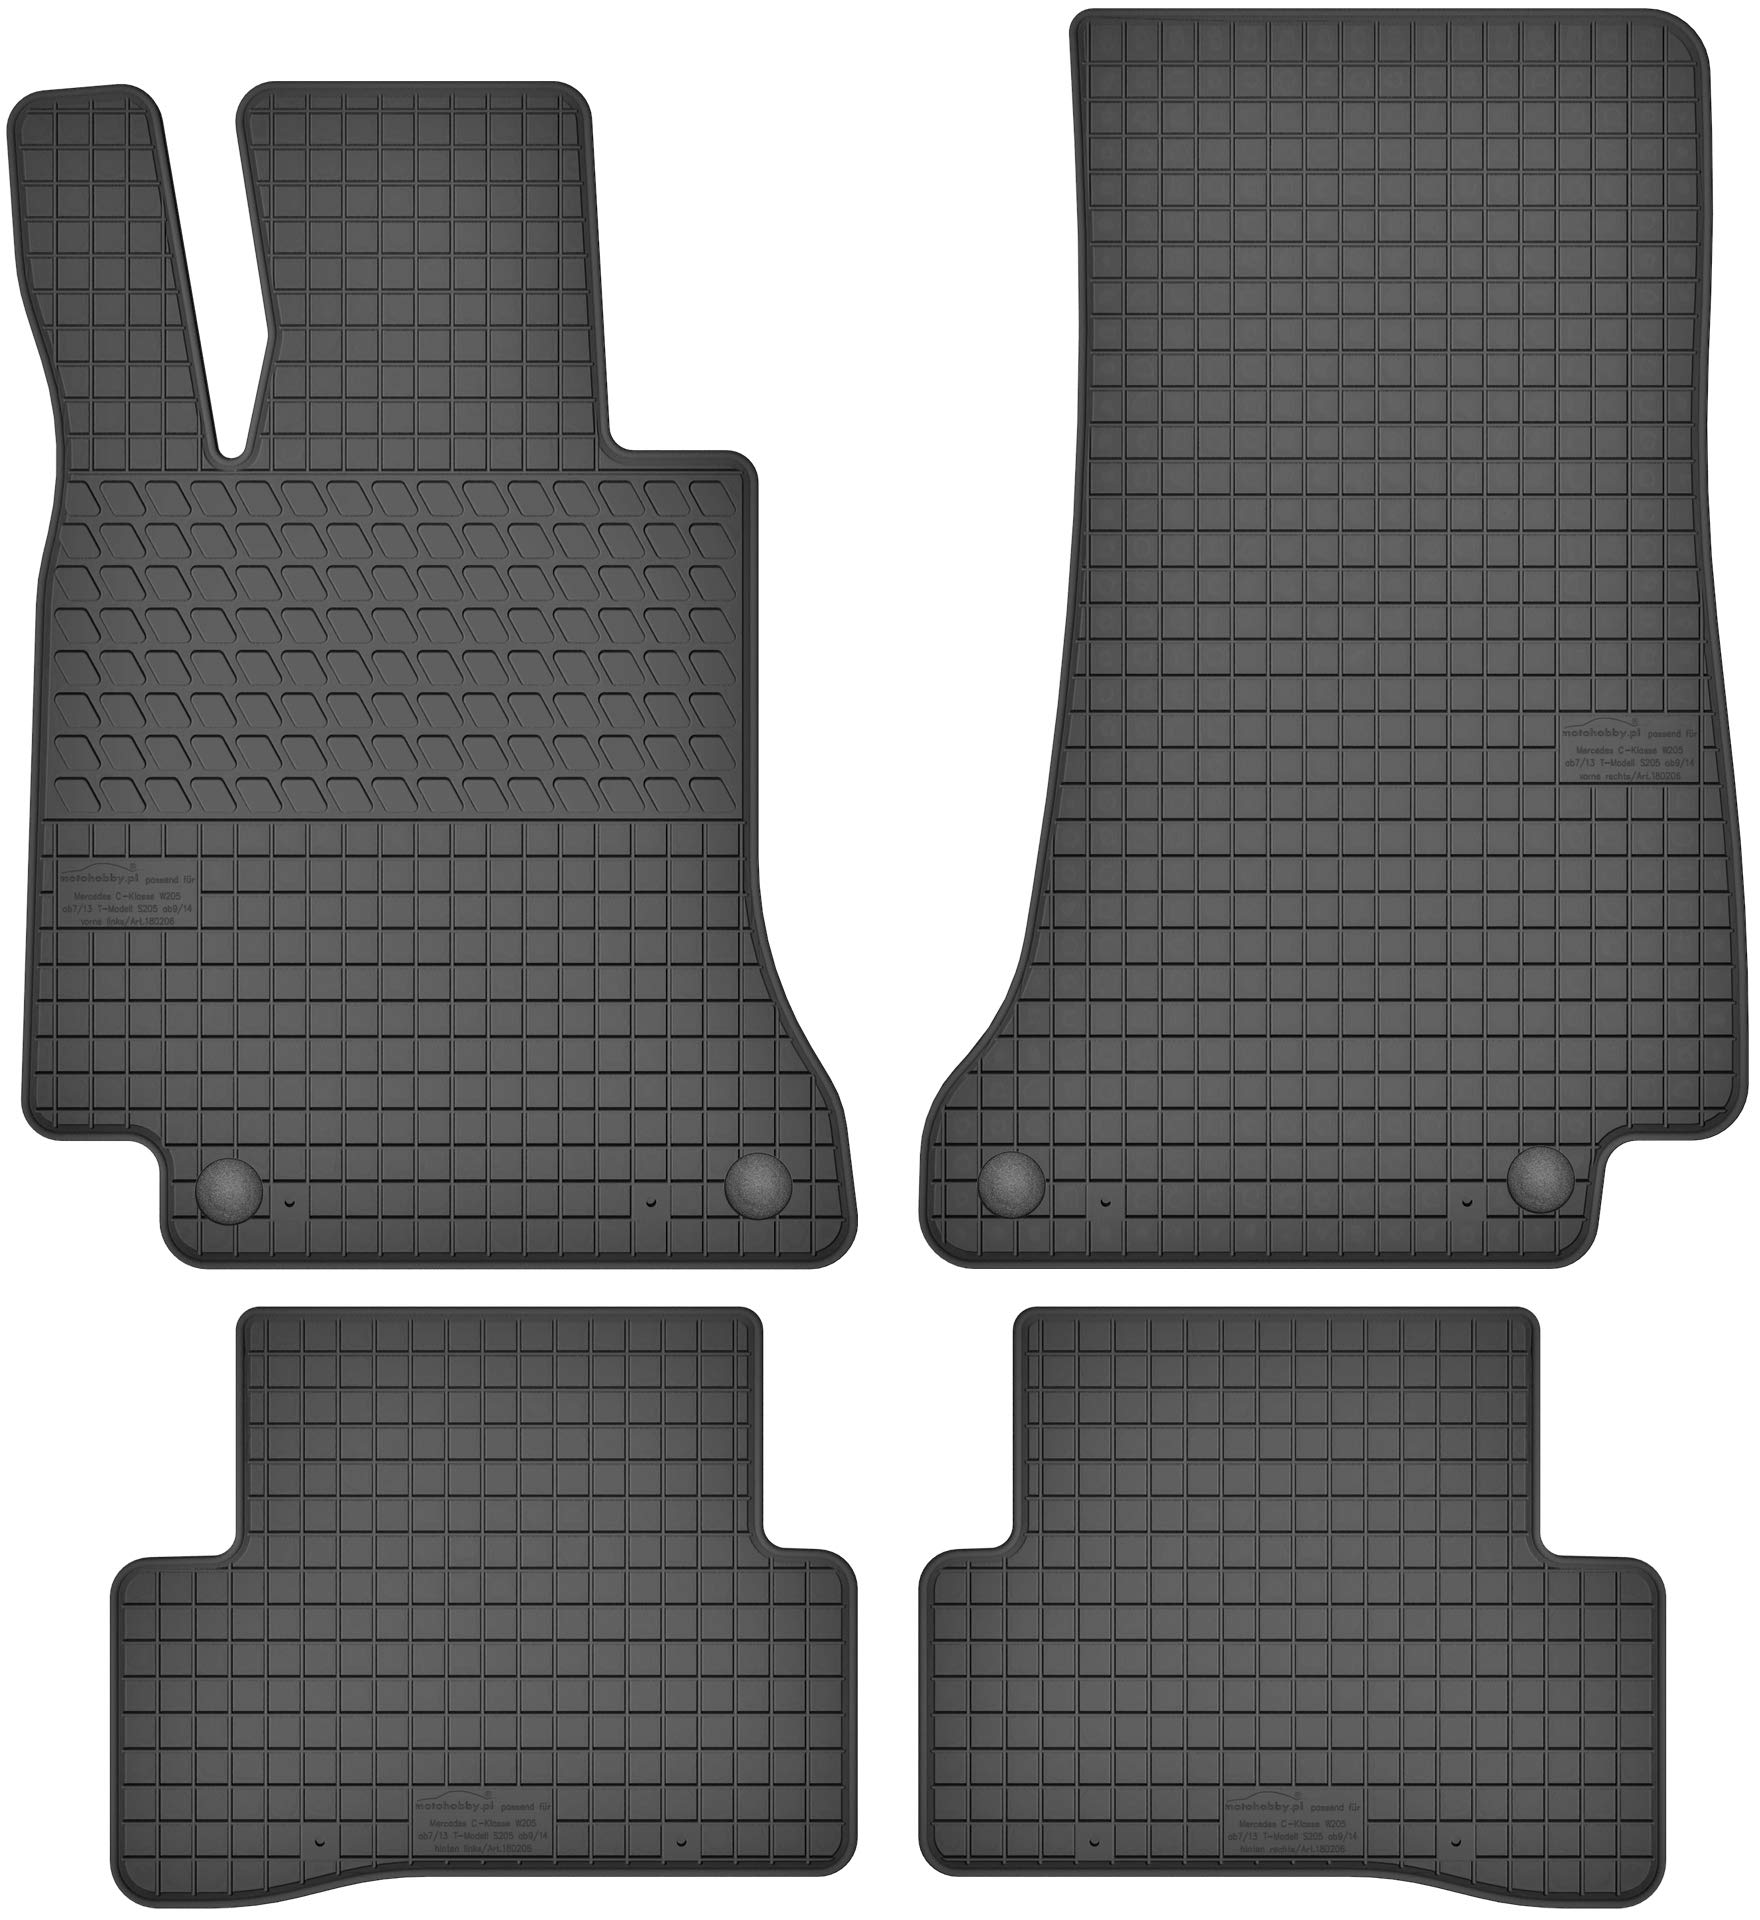 Gummimatten Gummi Fußmatten Satz für Mercedes-Benz C-Klasse W205 (ab 2014) - Passgenau von Motohobby